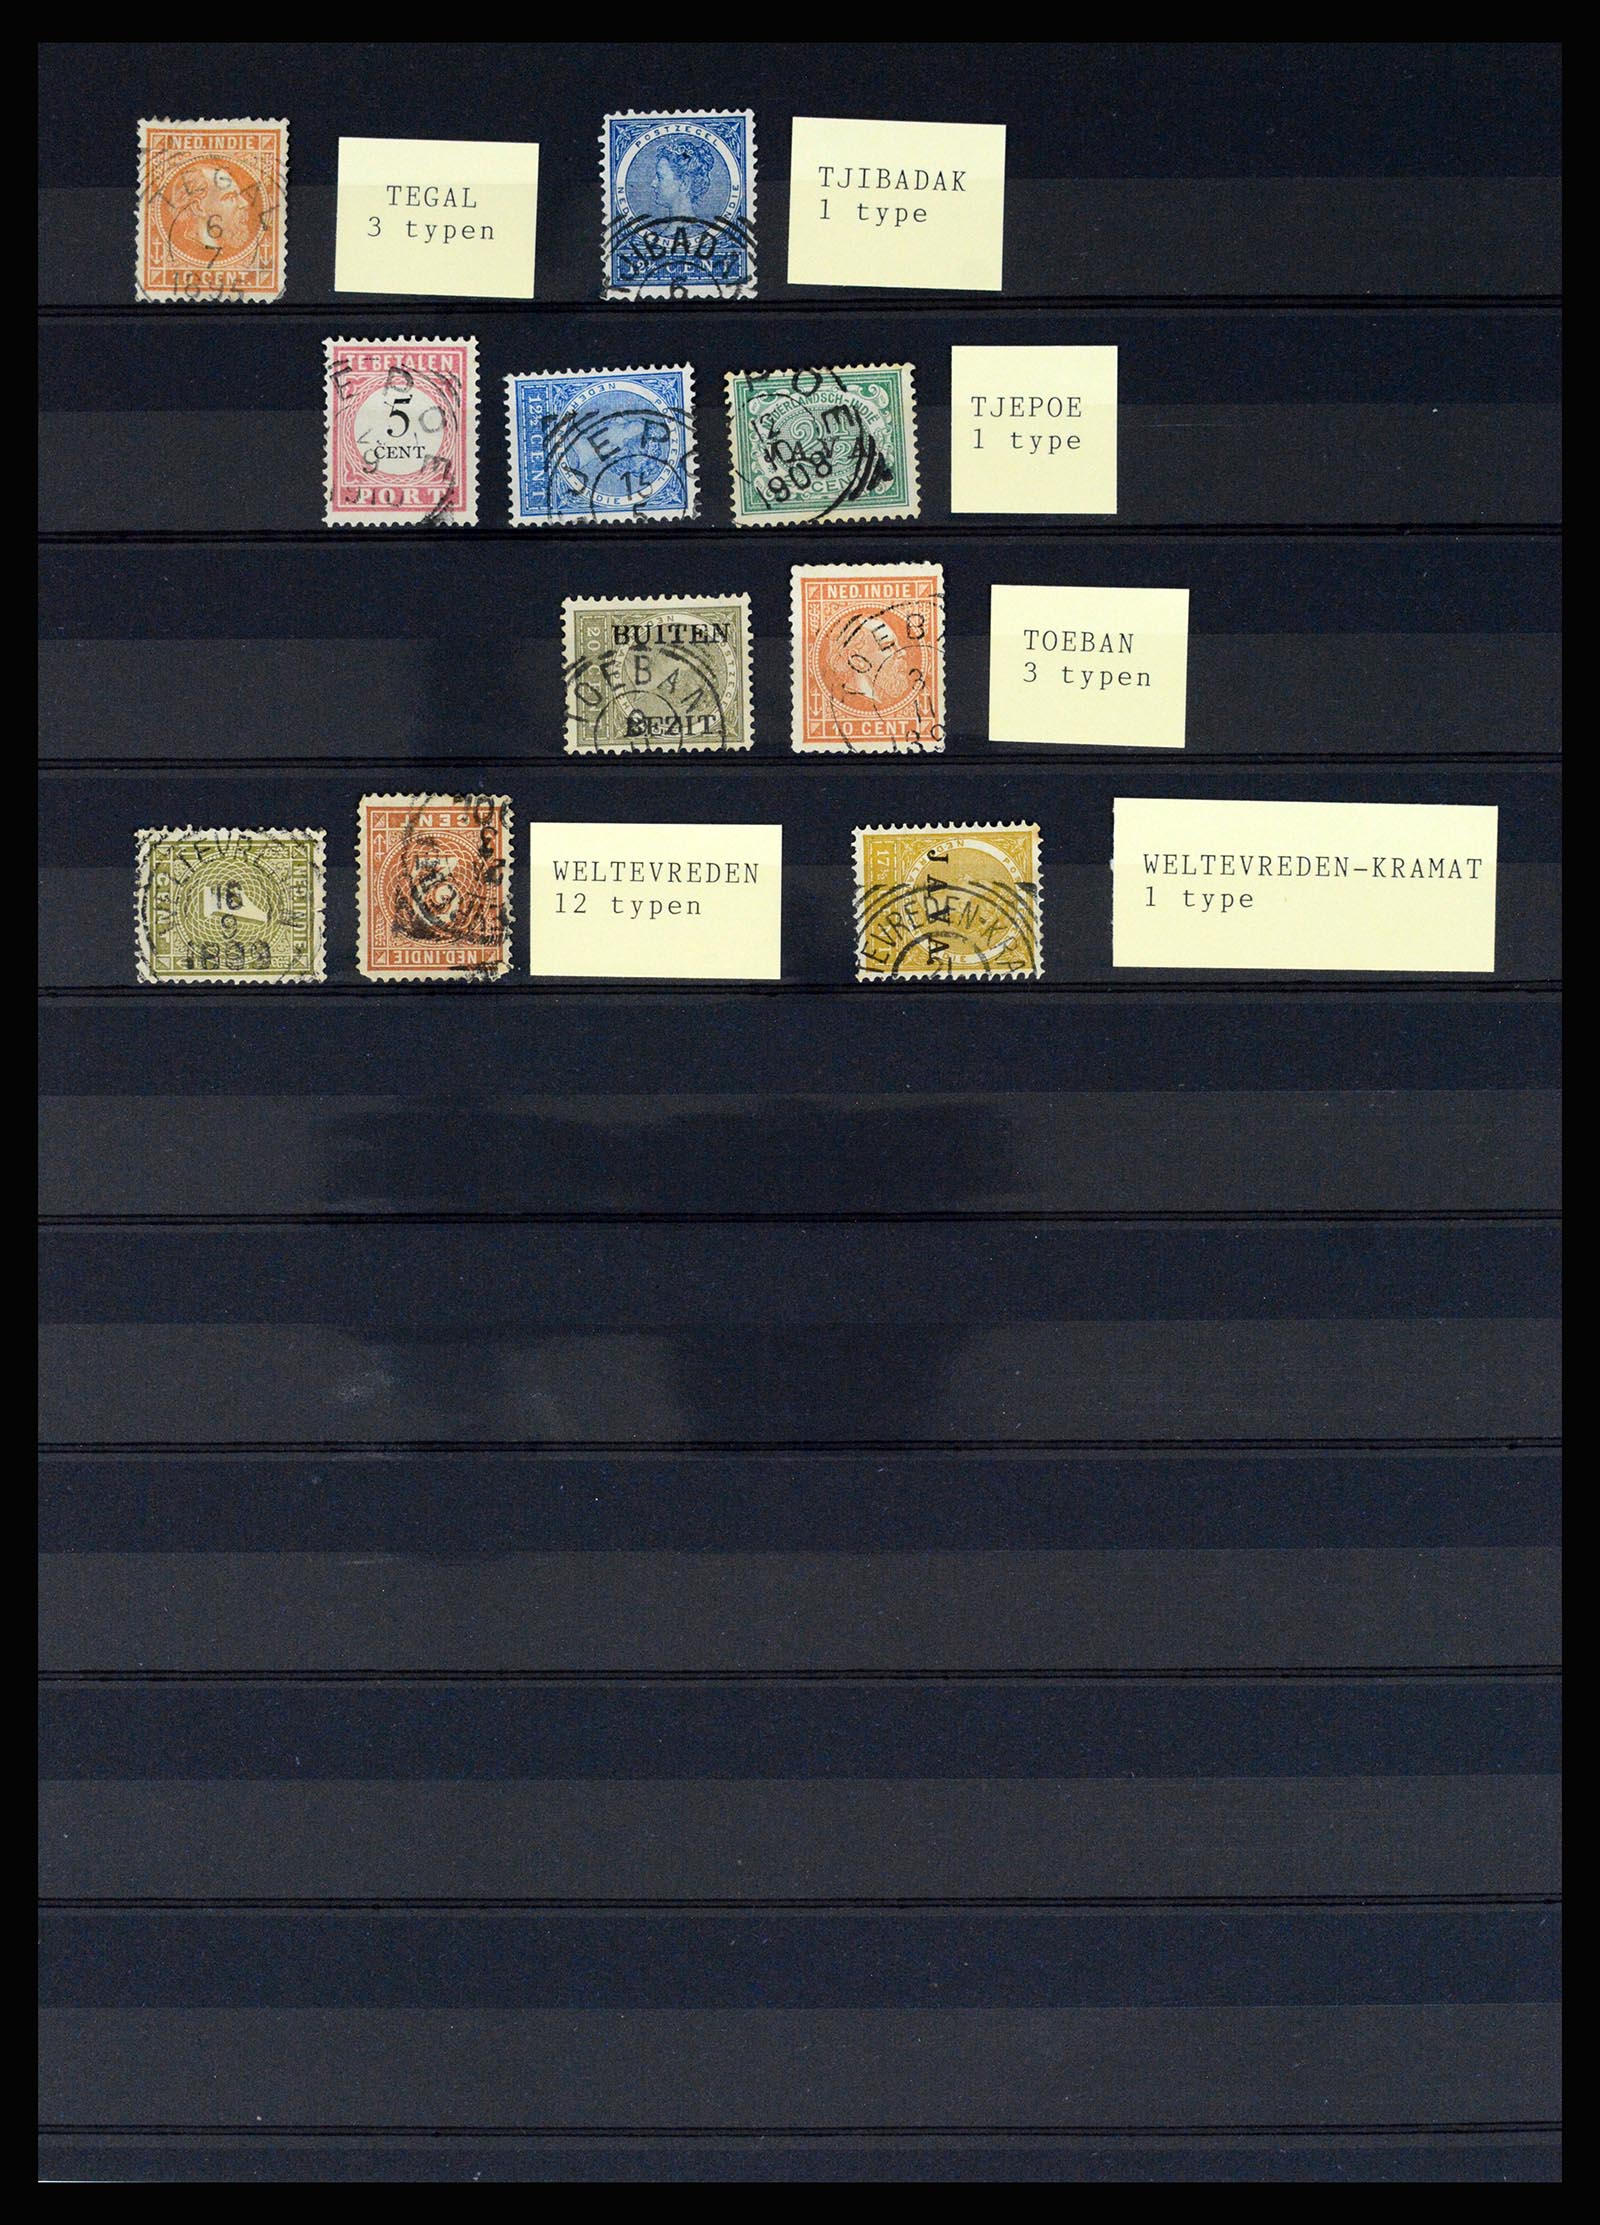 36512 082 - Stamp collection 36512 Nederlands Indië stempels 1872-1930.